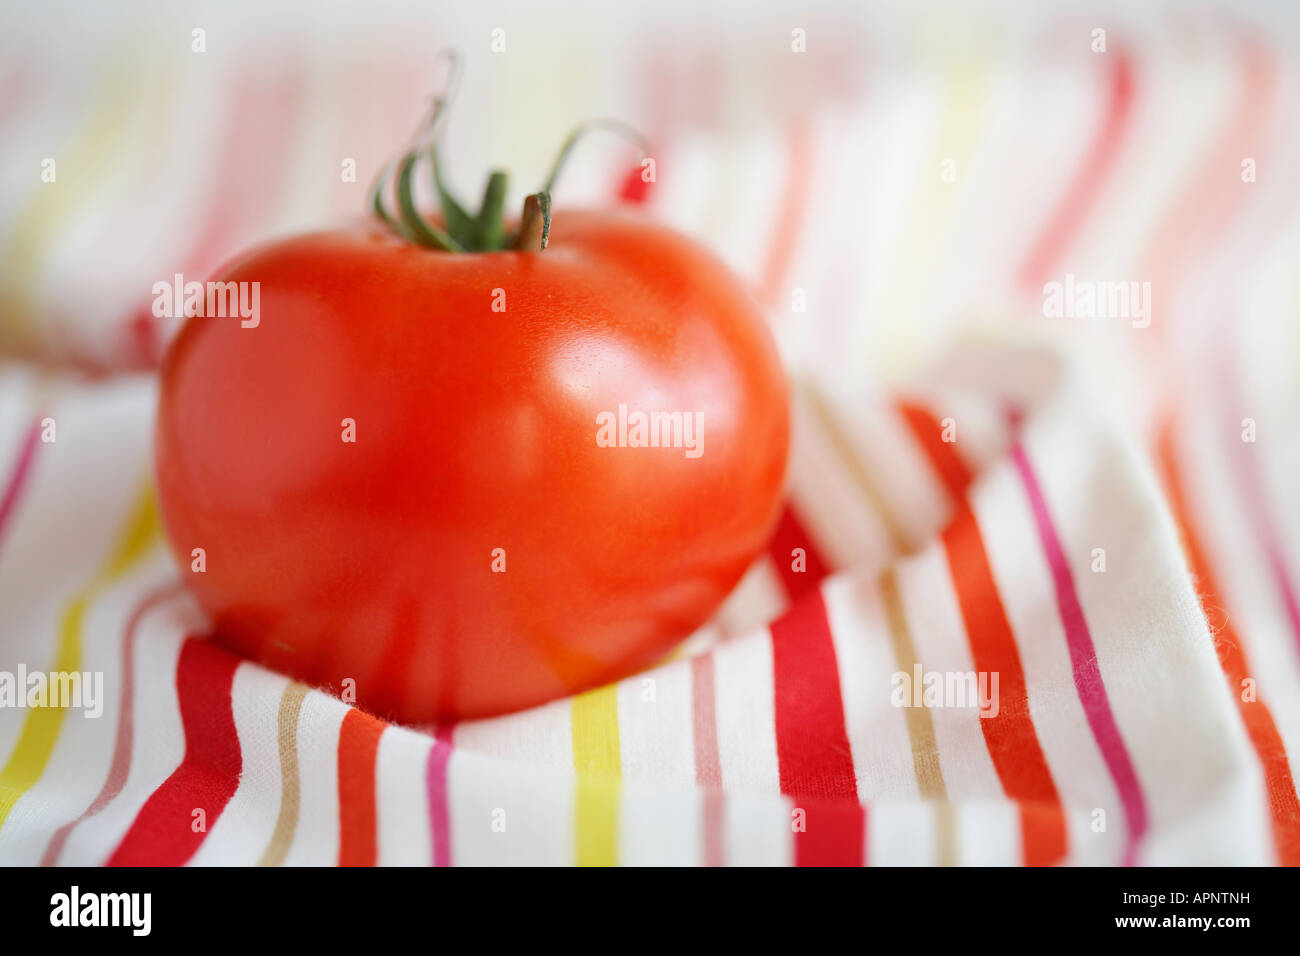 Single tomato on stripy tablecloth Stock Photo